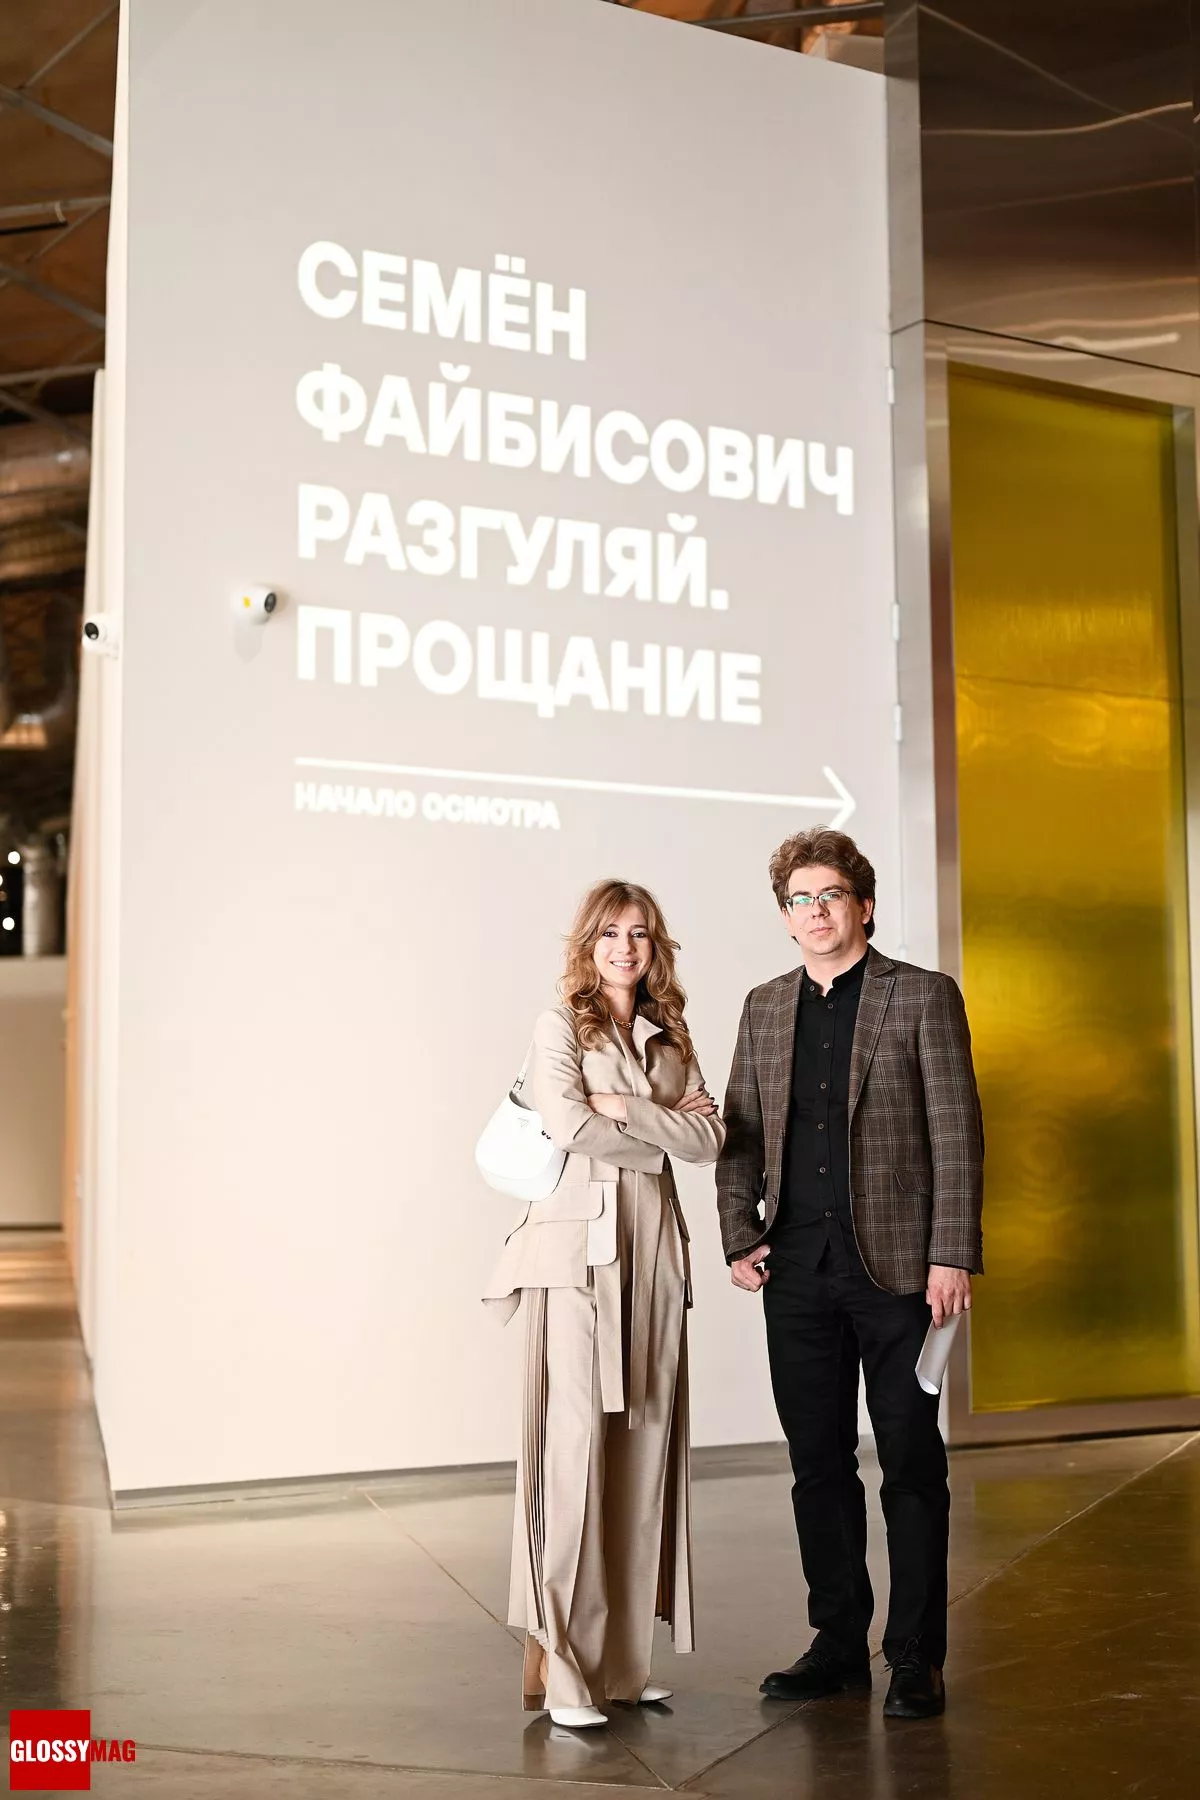 Кристина Краснянская и Данила Булатов на открытии выставки Семёна Файбисовича в Еврейском музее и центре толерантности, 20 июня 2022 г.